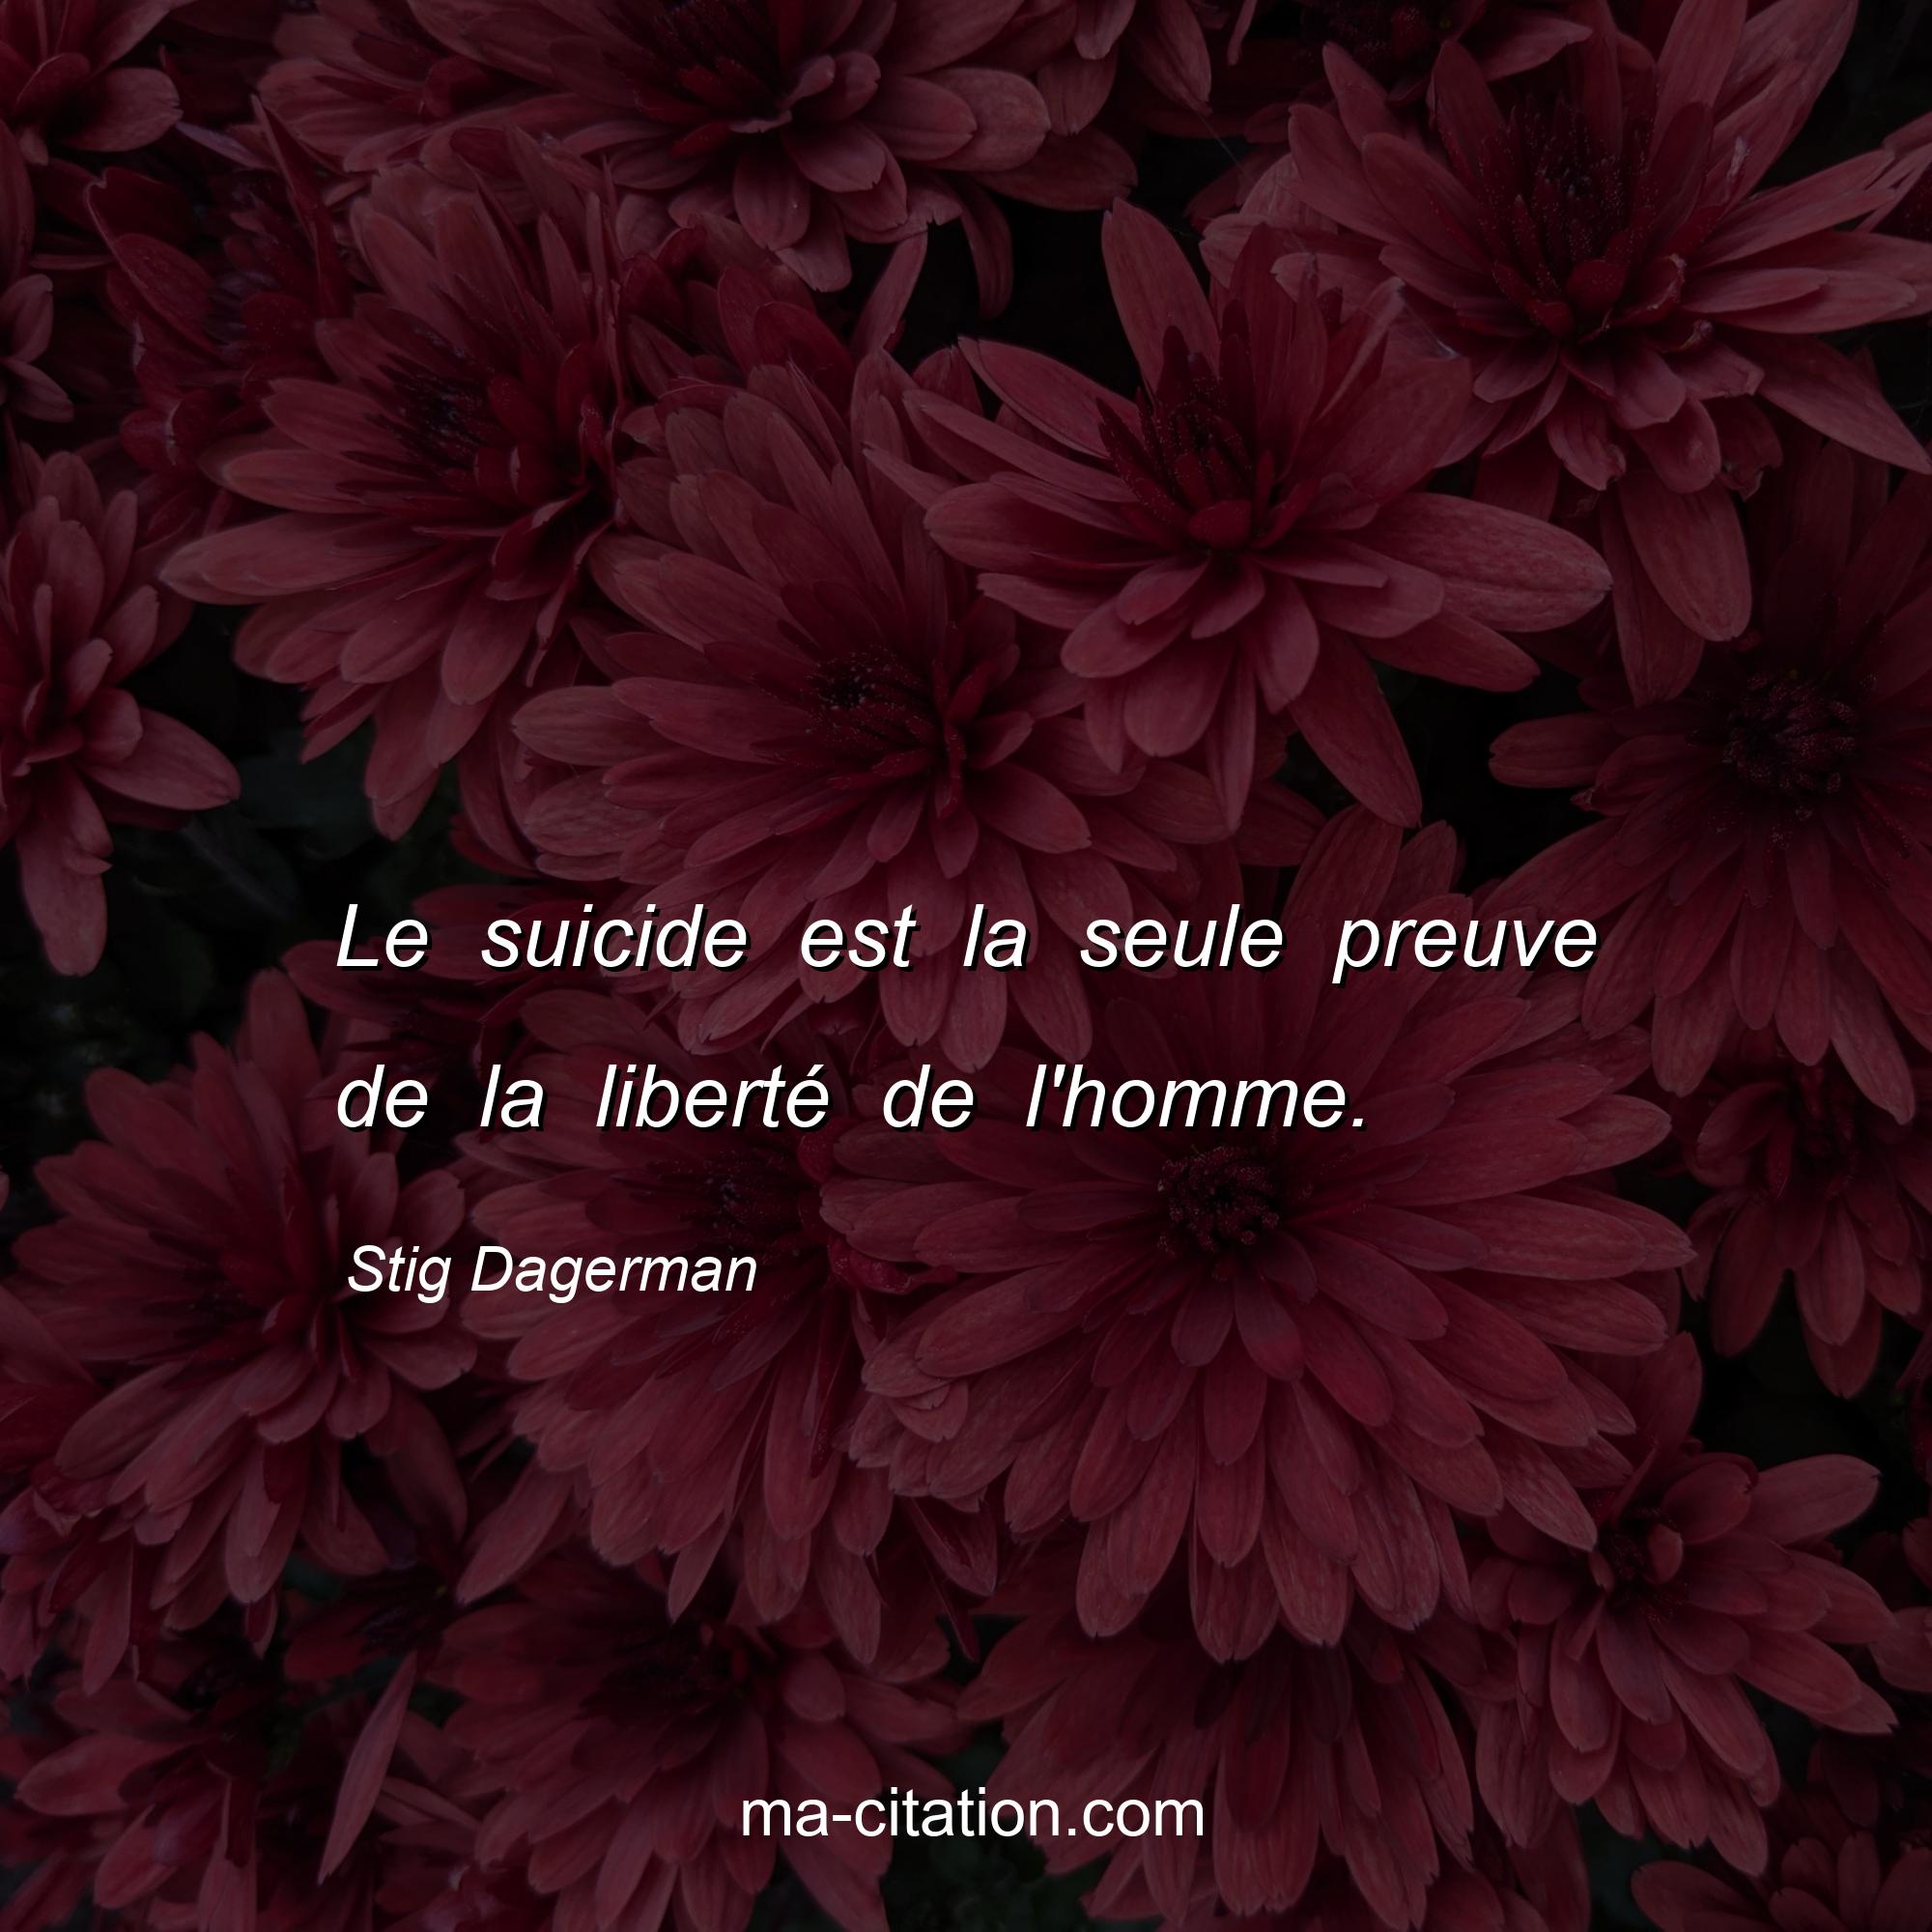 Stig Dagerman : Le suicide est la seule preuve de la liberté de l'homme.